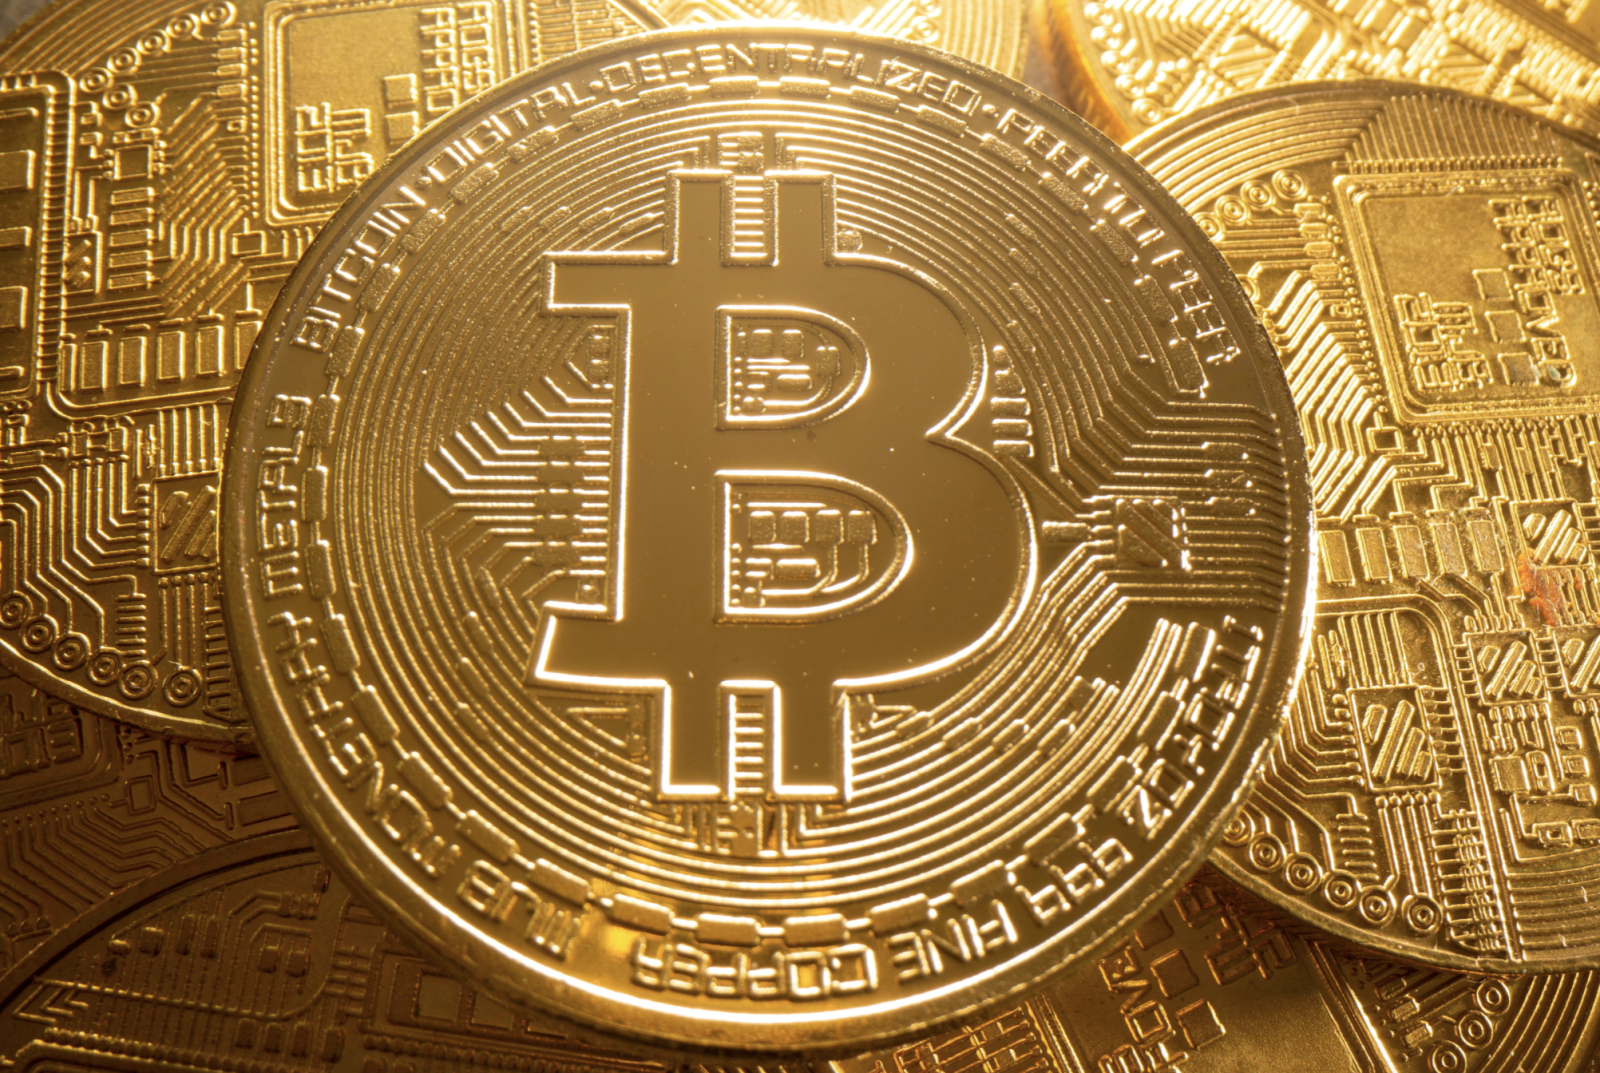  Bitcoin là đồng tiền điện tử mạnh nhất hiện nay